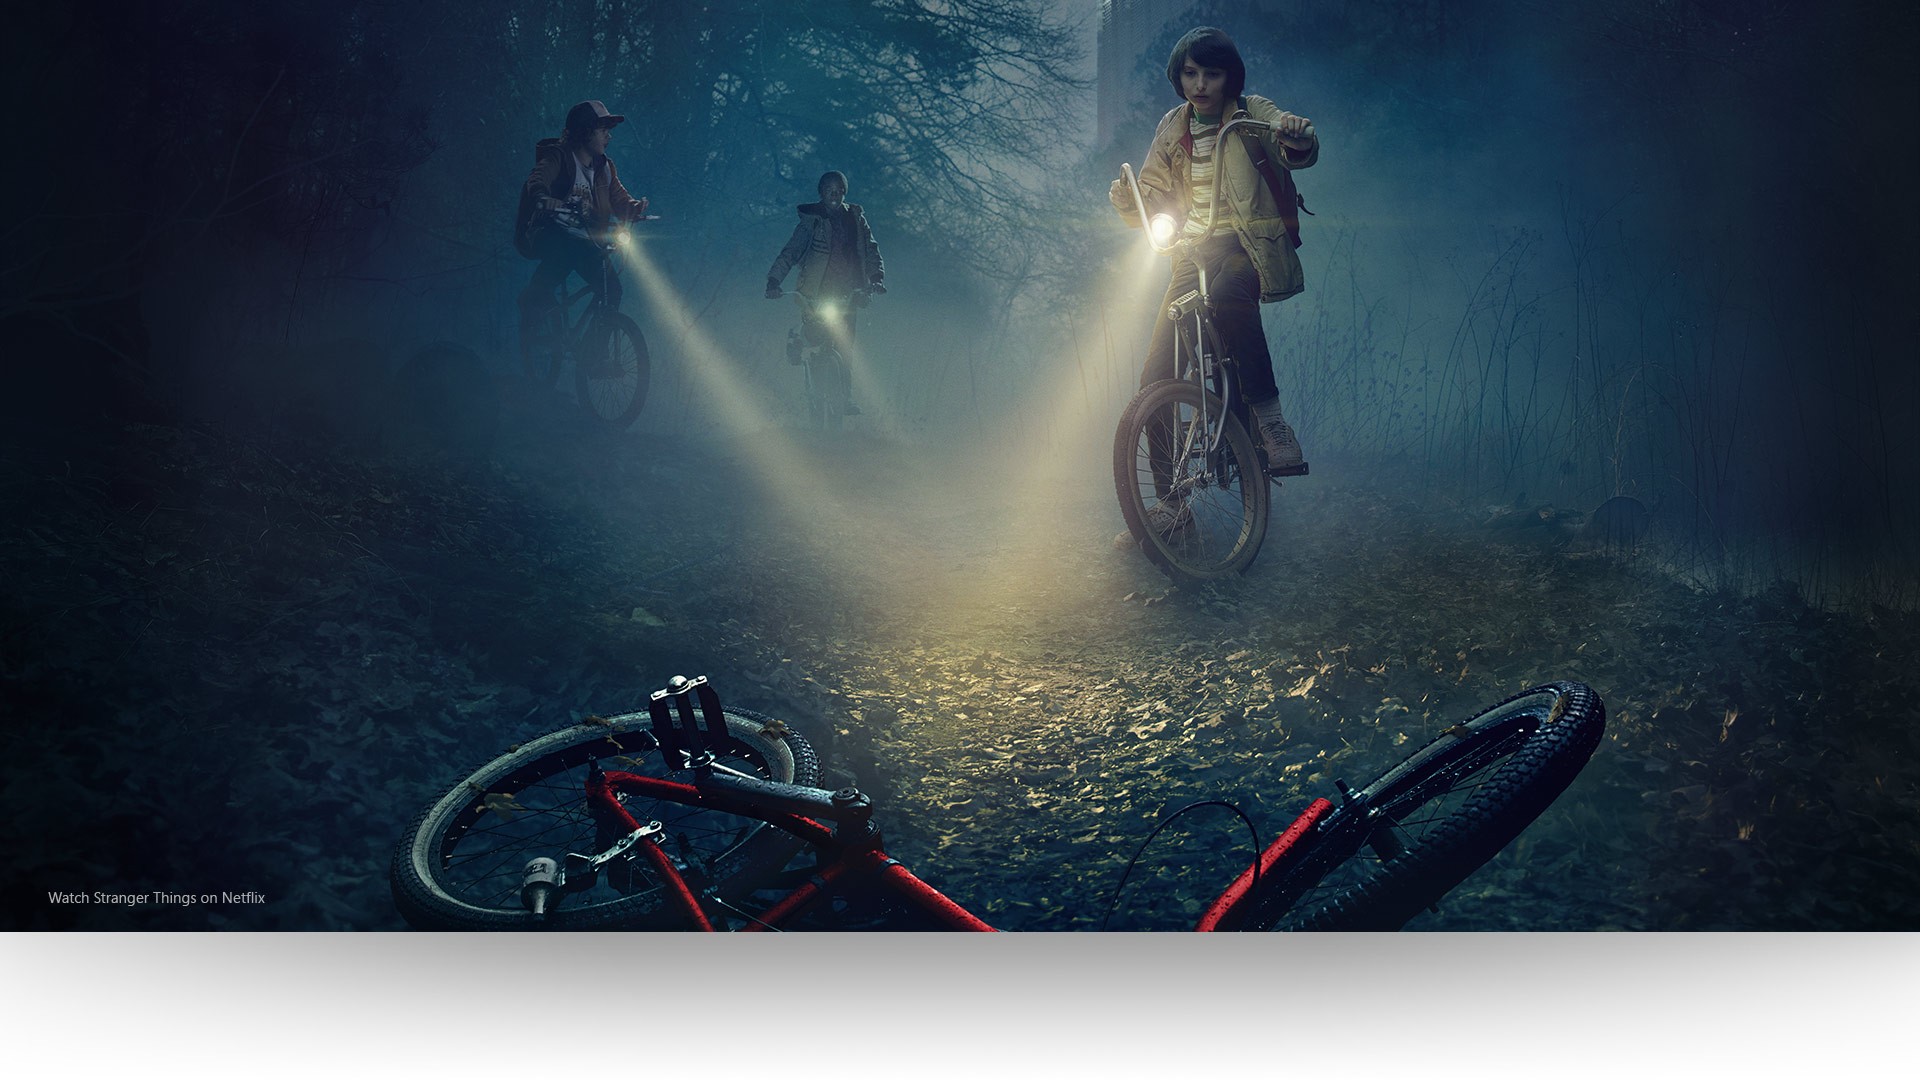 Stranger Things: Дастин, Лукас и Майк направляют свет своих фонарей на велосипед, оставленный кем-то на темной лесной тропинке. Смотрите сериал «Очень странные дела» на Netflix.